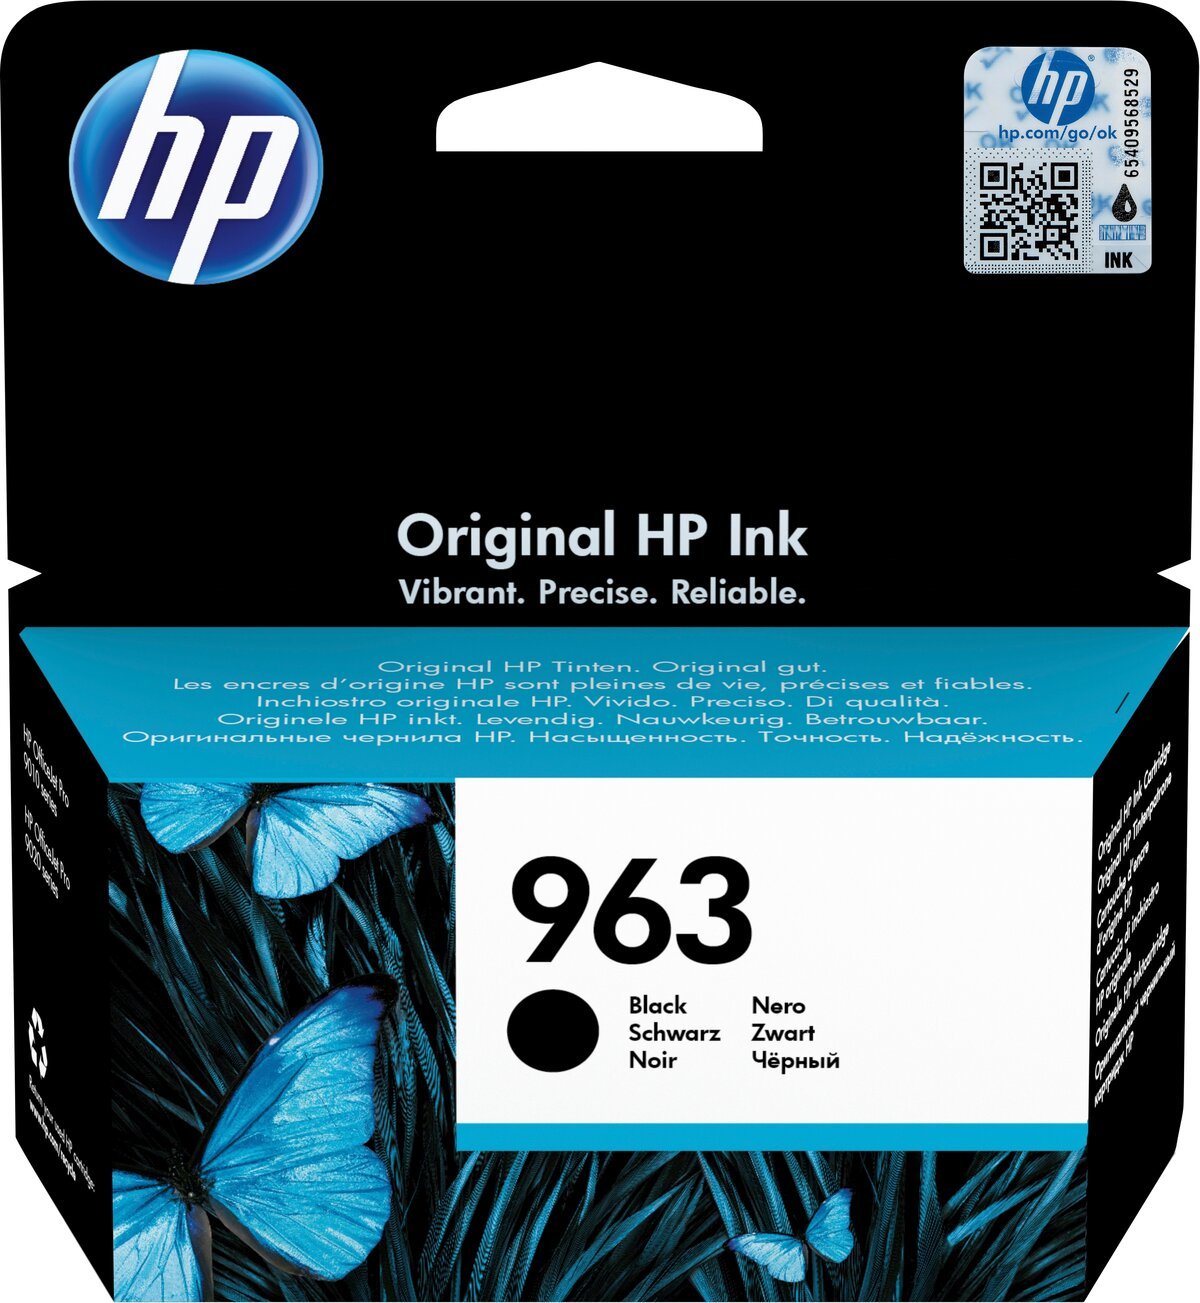 HP Tusz 963 3JA26AE Black Original Ink Cartridge widok od przodu na opakowanie